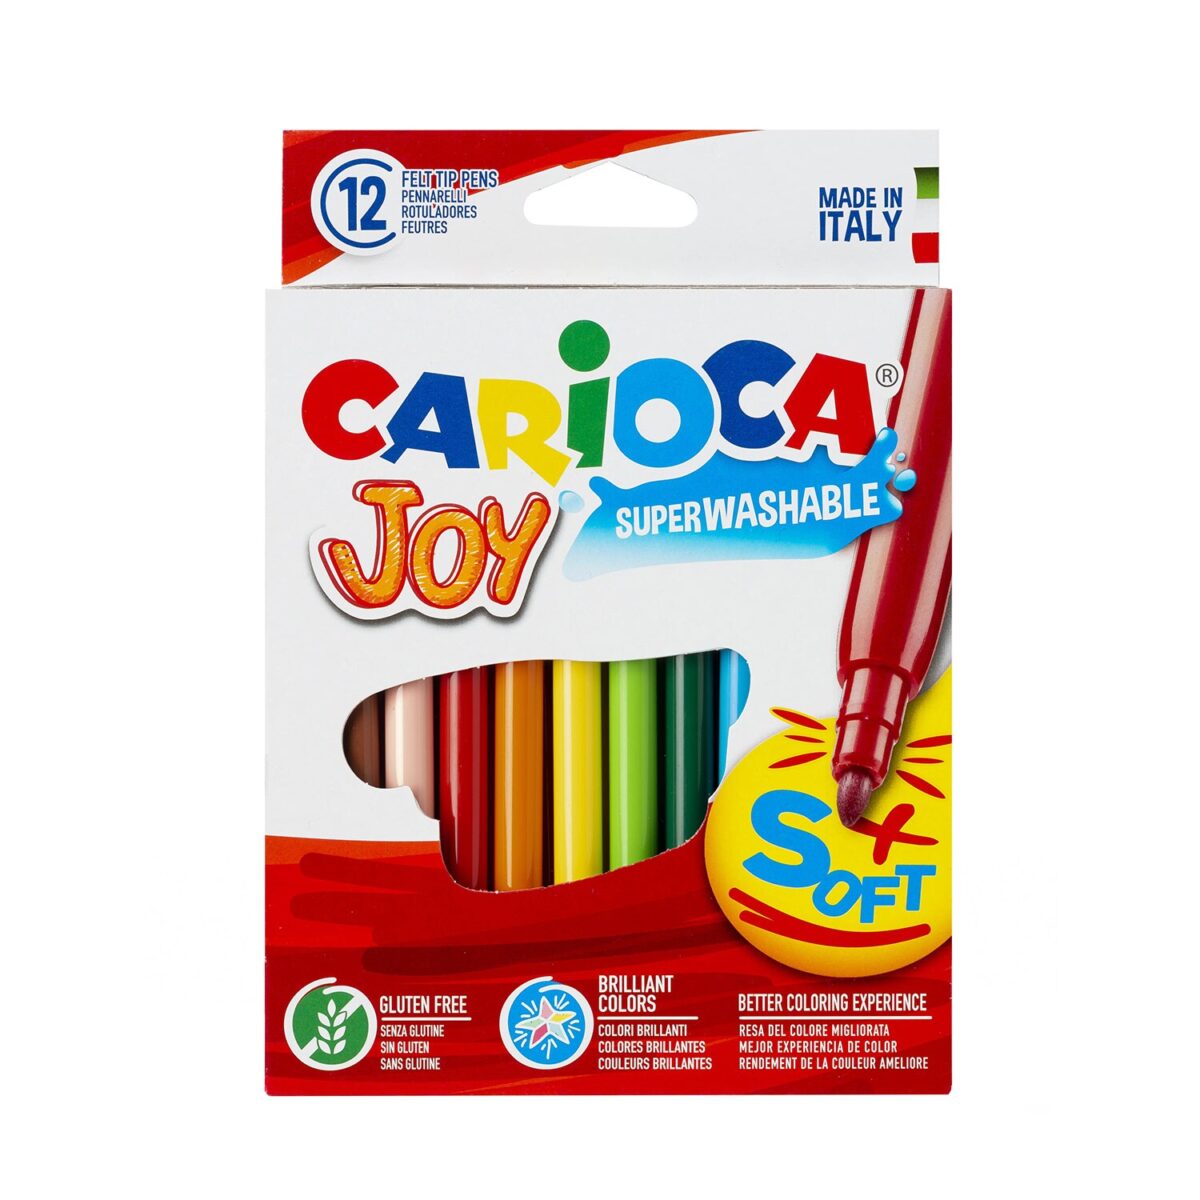 joy-superwashable-markers-carioca